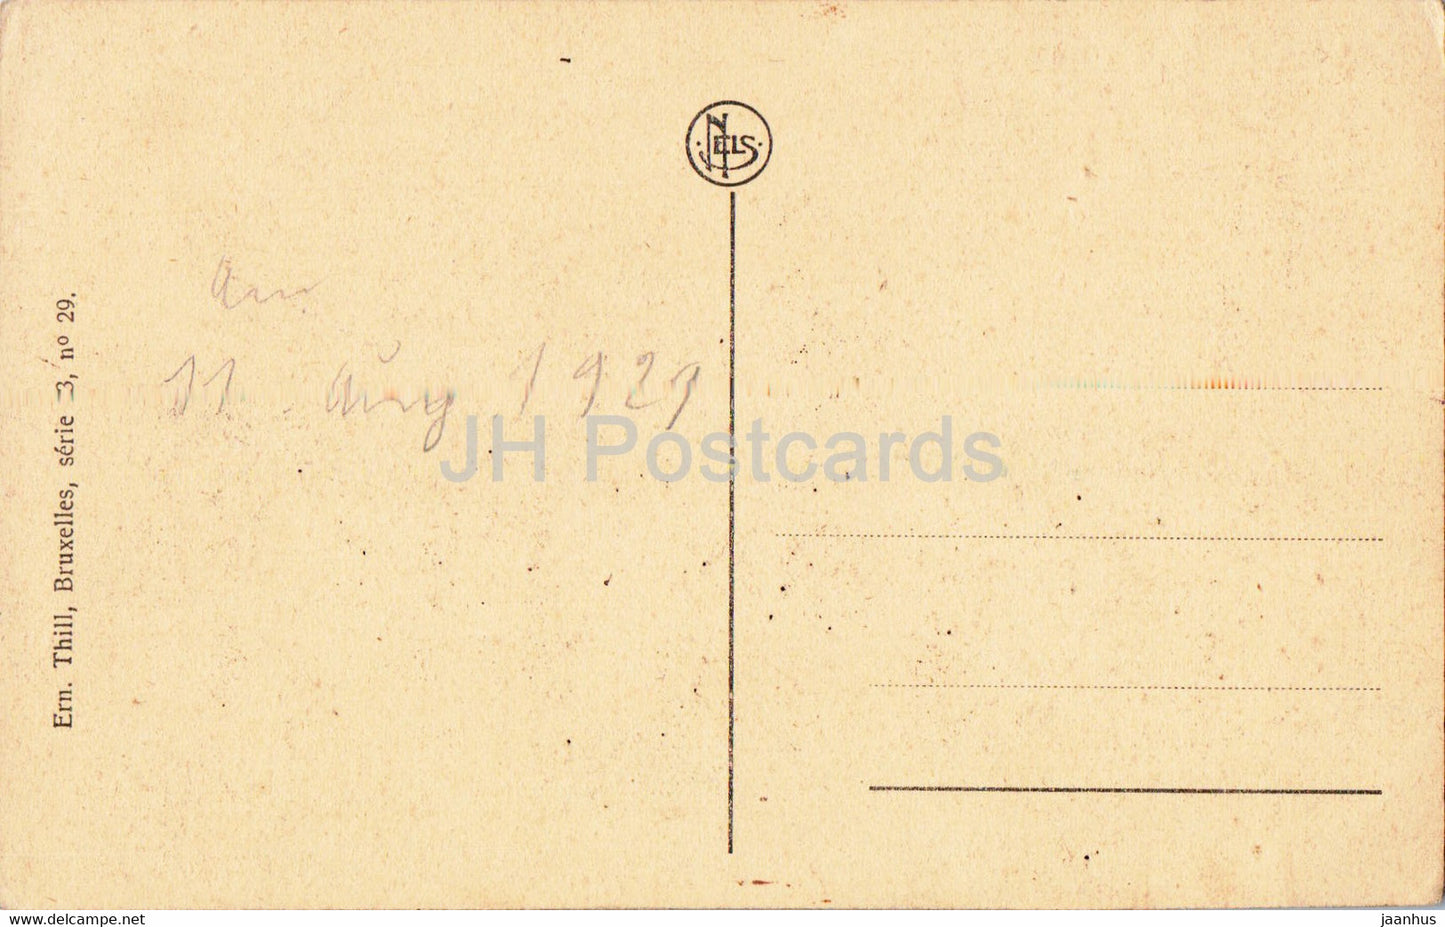 Ostende - Ostende - Le Kursaal et la Plage - plage - carte postale ancienne - 1921 - Belgique - utilisé